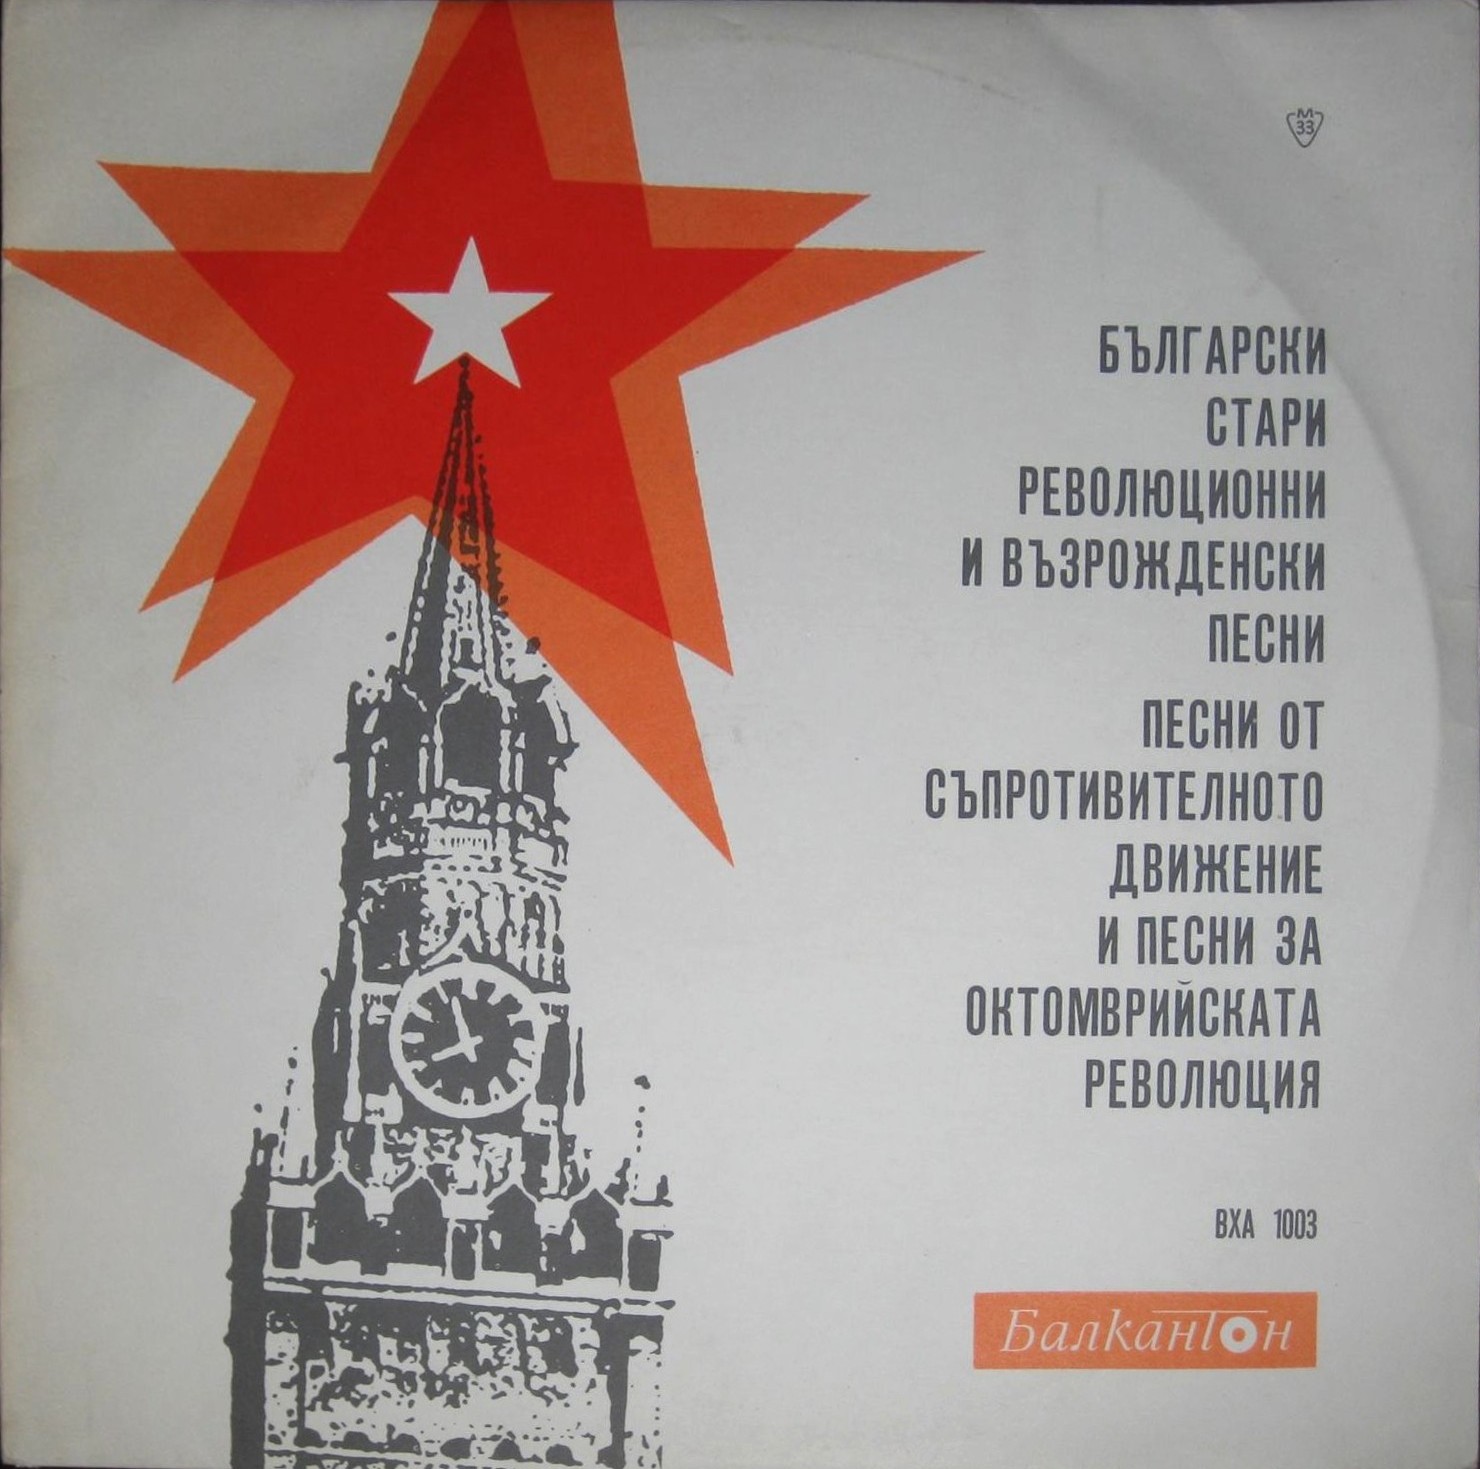 Български стари революционни и възрожденски песни, песни от съпротивителното движение и песни за Октомврийската революция